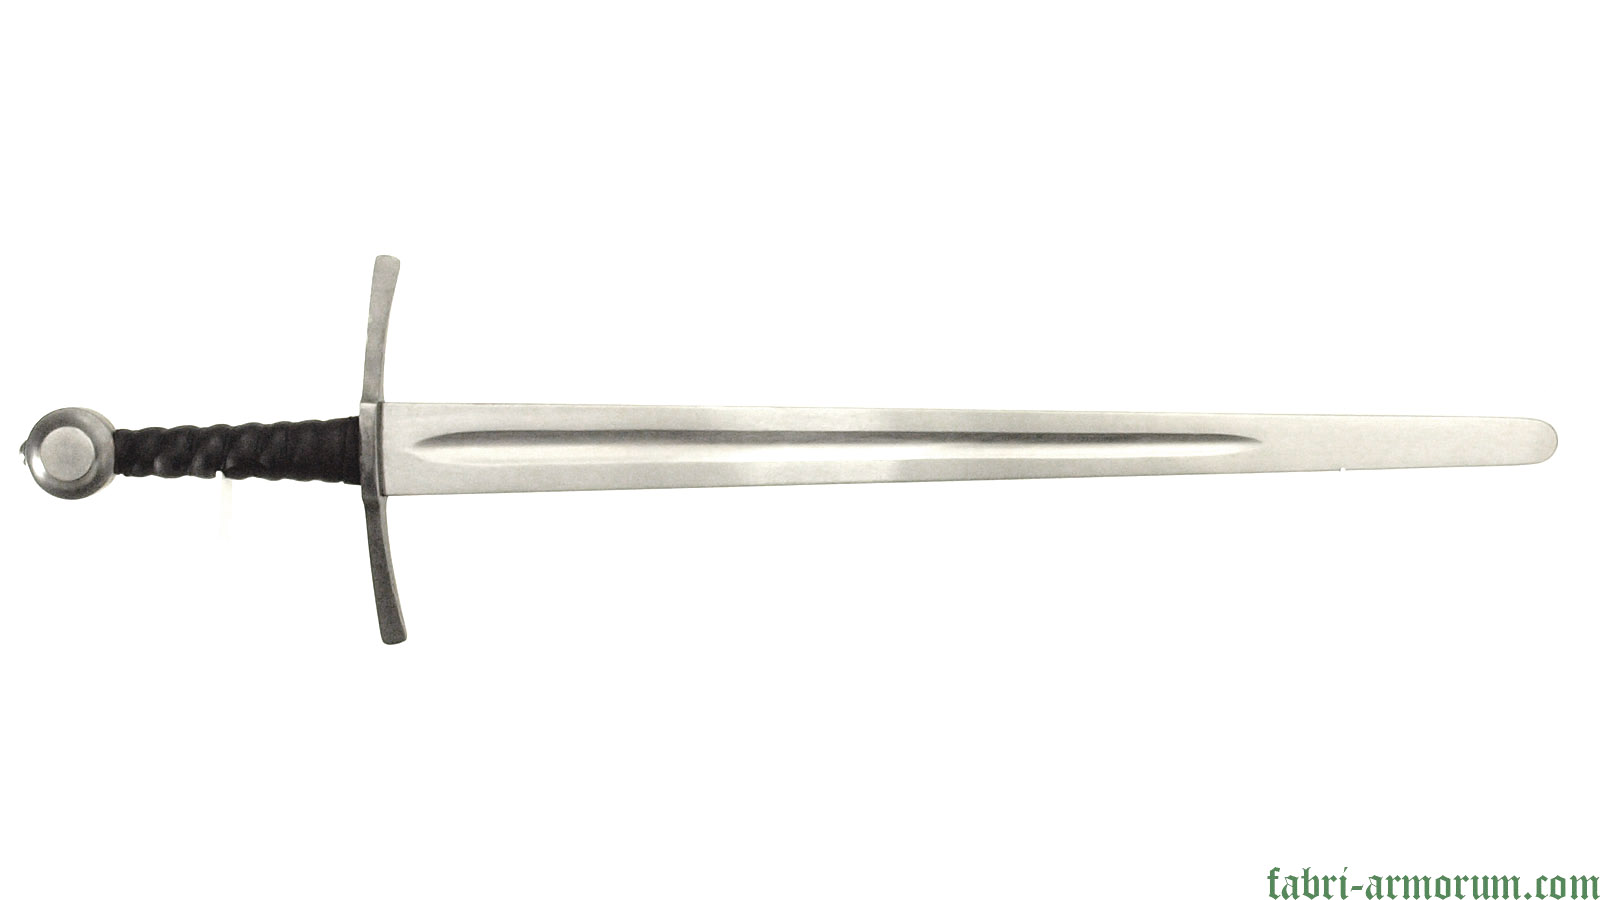 Archer short sword, Battle Blade